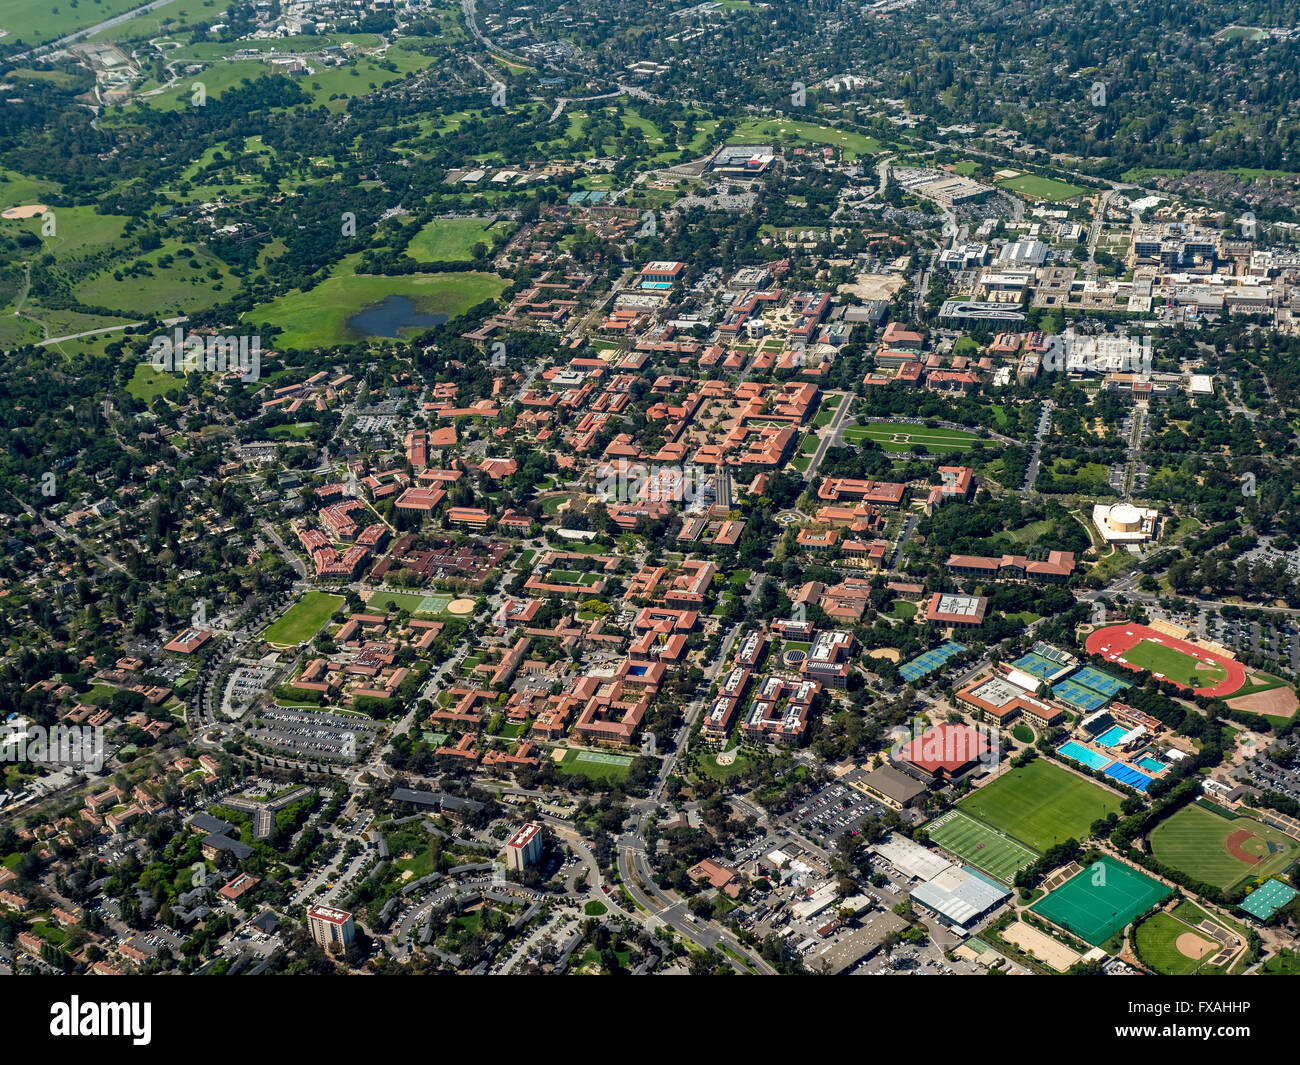 Campus de l'université Stanford University, Palo Alto, Californie, Silicon Valley, Californie, USA Banque D'Images